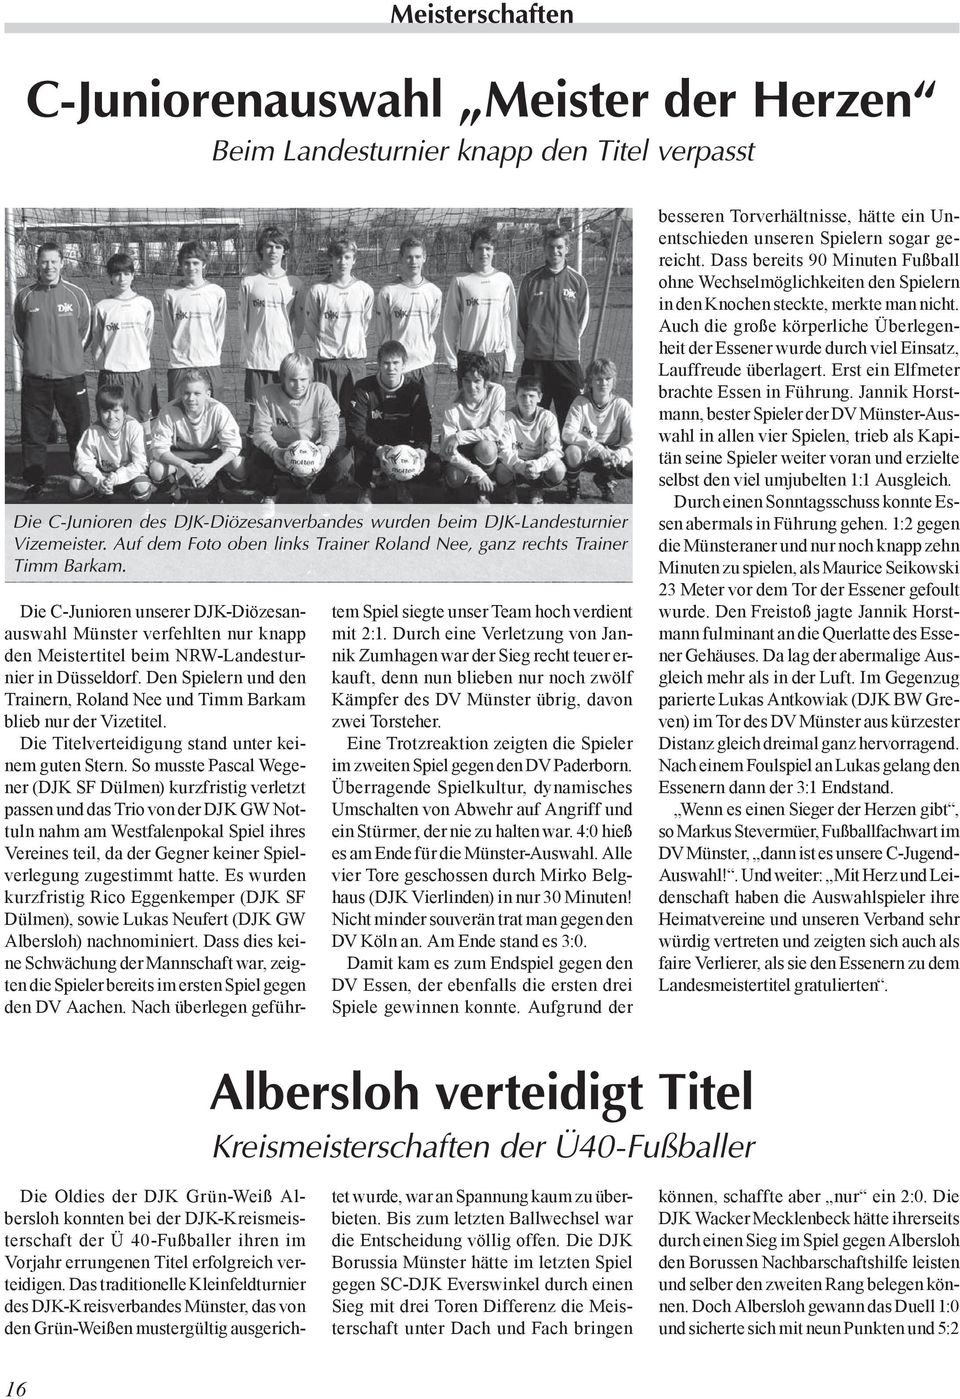 Die C-Junioren unserer DJK-Diözesanauswahl Münster verfehlten nur knapp den Meistertitel beim NRW-Landesturnier in Düsseldorf.